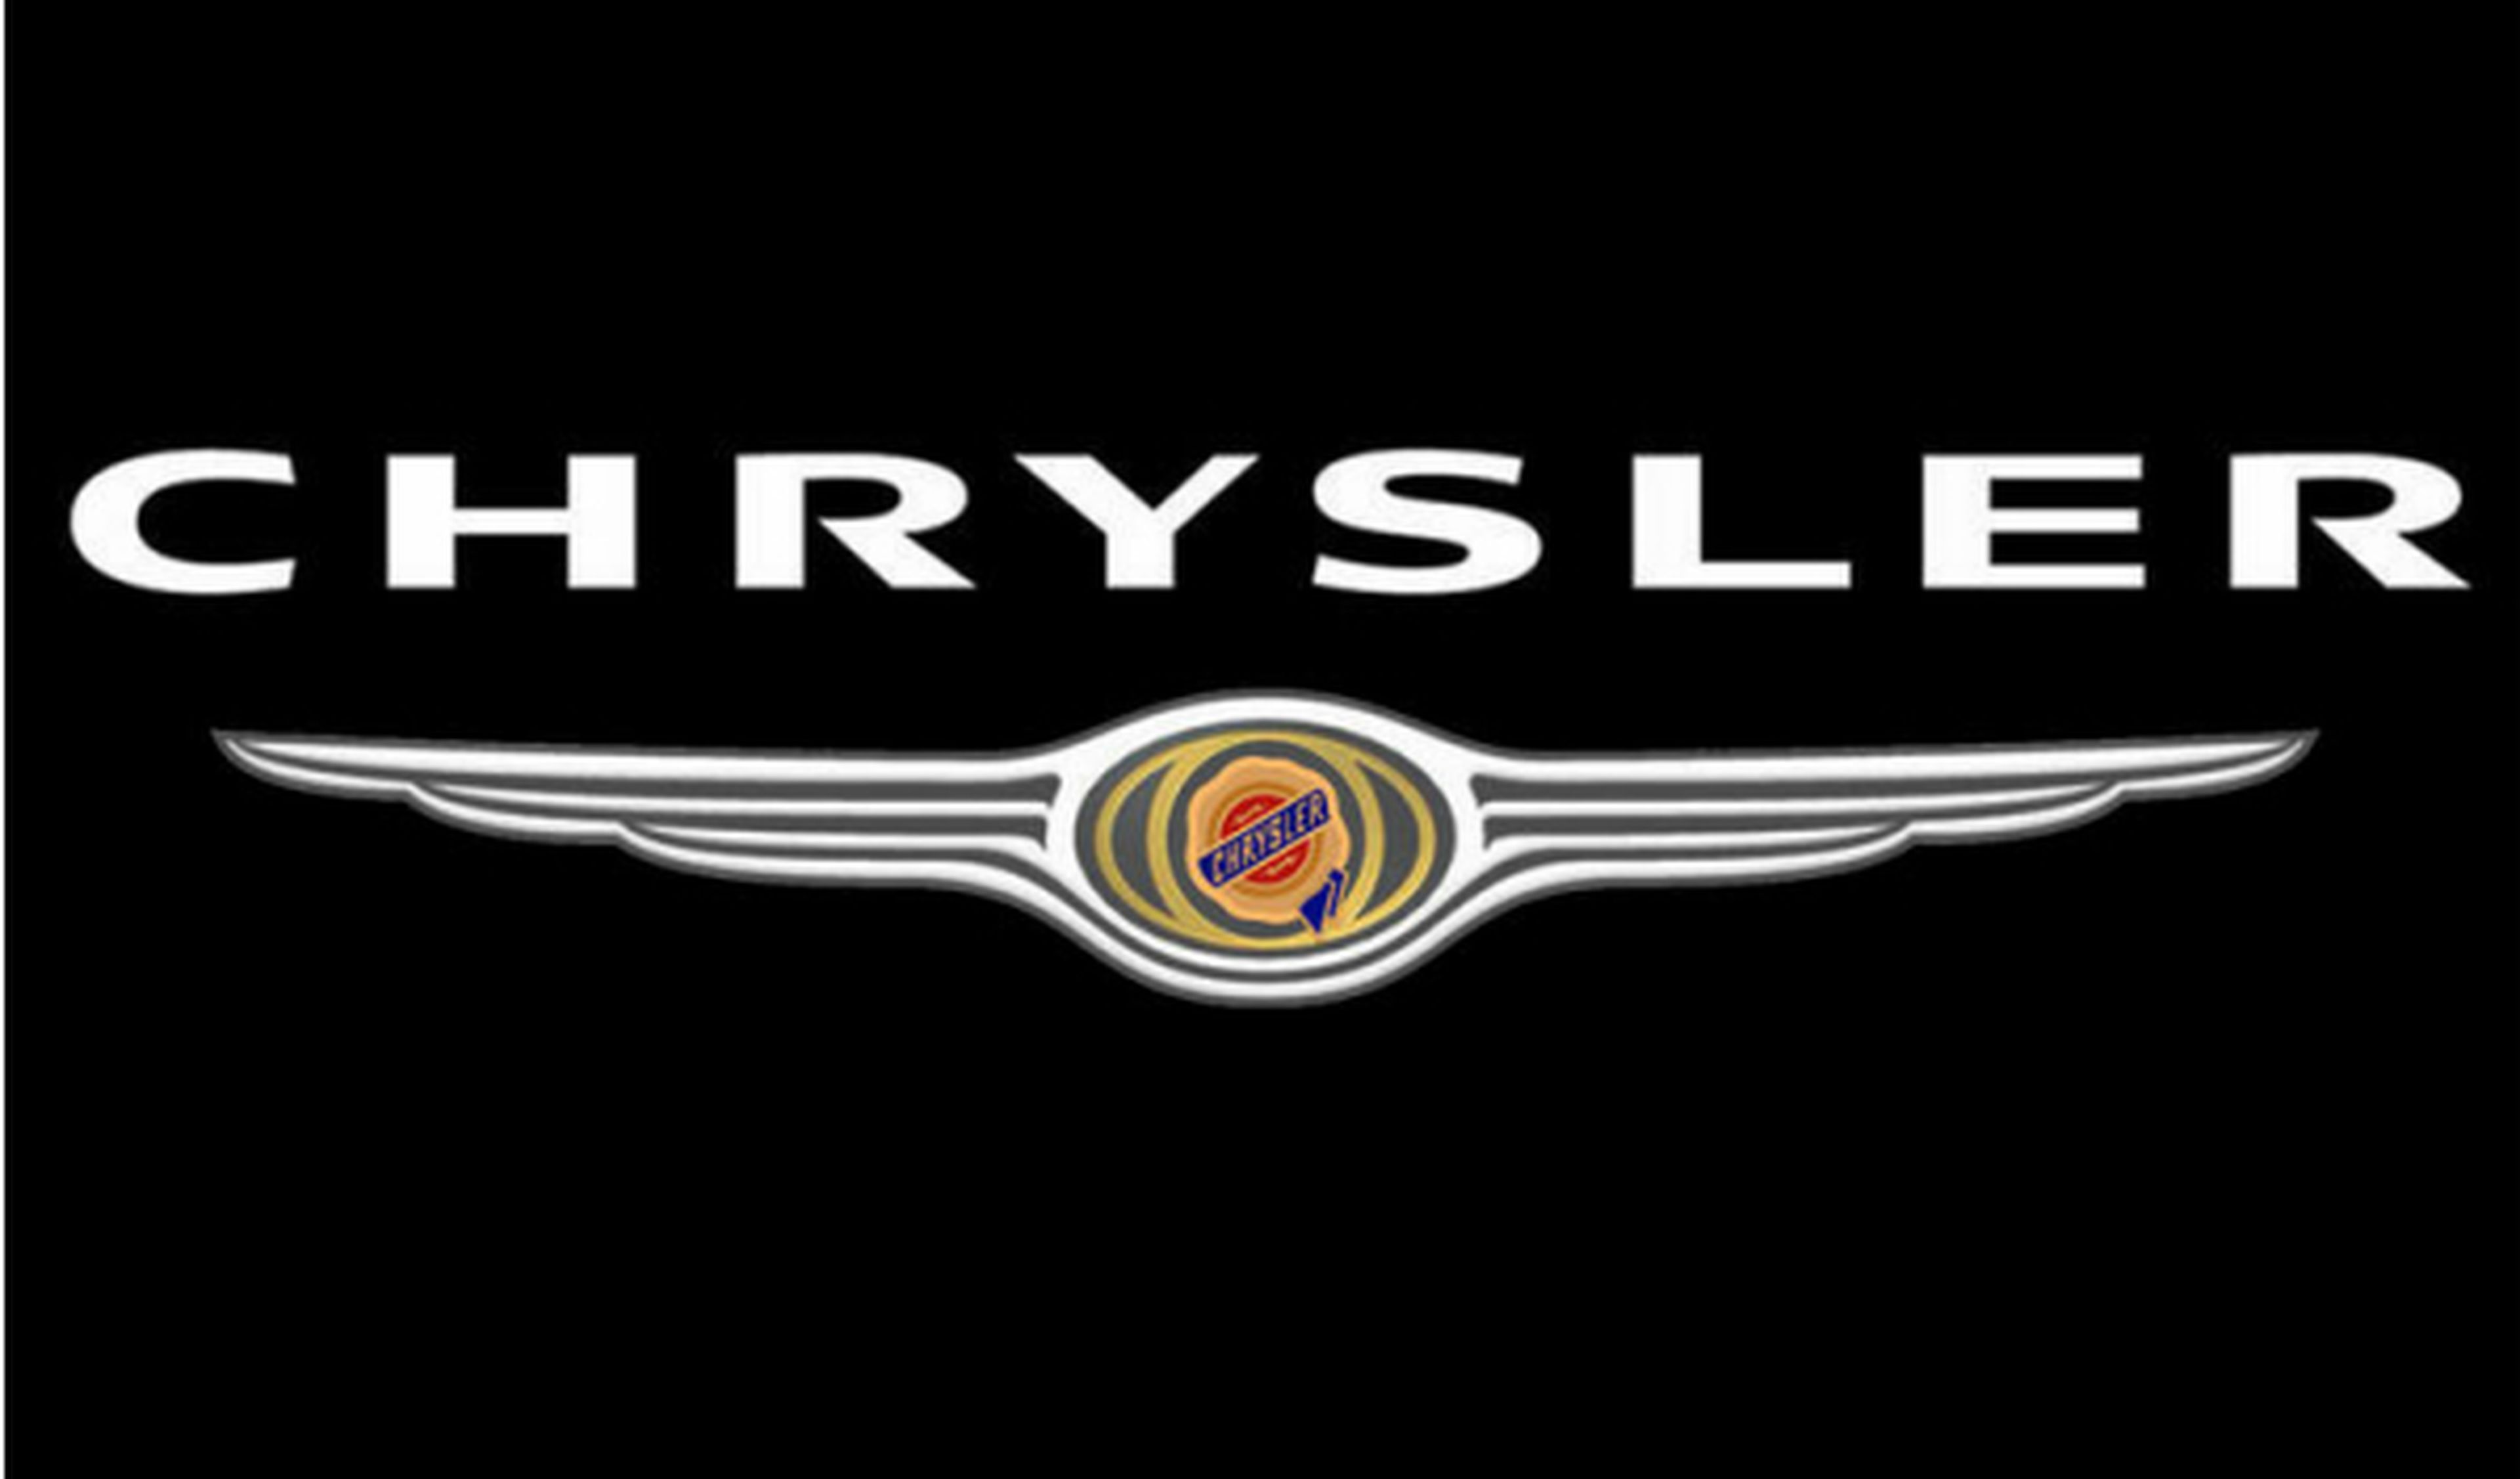 Chrysler saldará su deuda con EEUU y Canadá